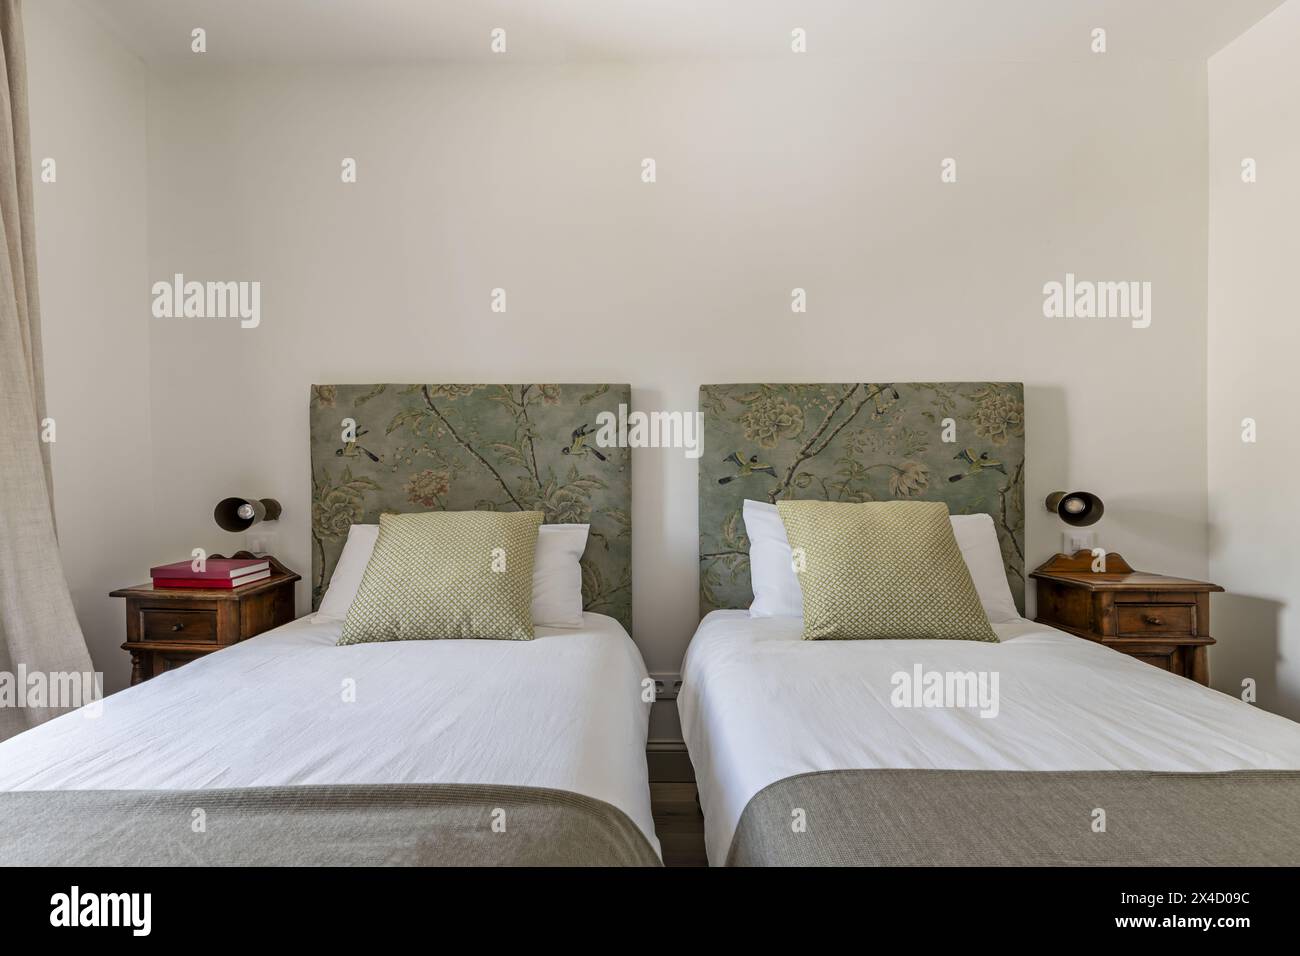 Ein Schlafzimmer mit Twin-Betten, Kopfteilen mit bedrucktem Stoff, n Kissen und Kissen und hölzernen Beistelltischen im Vintage-Stil Stockfoto